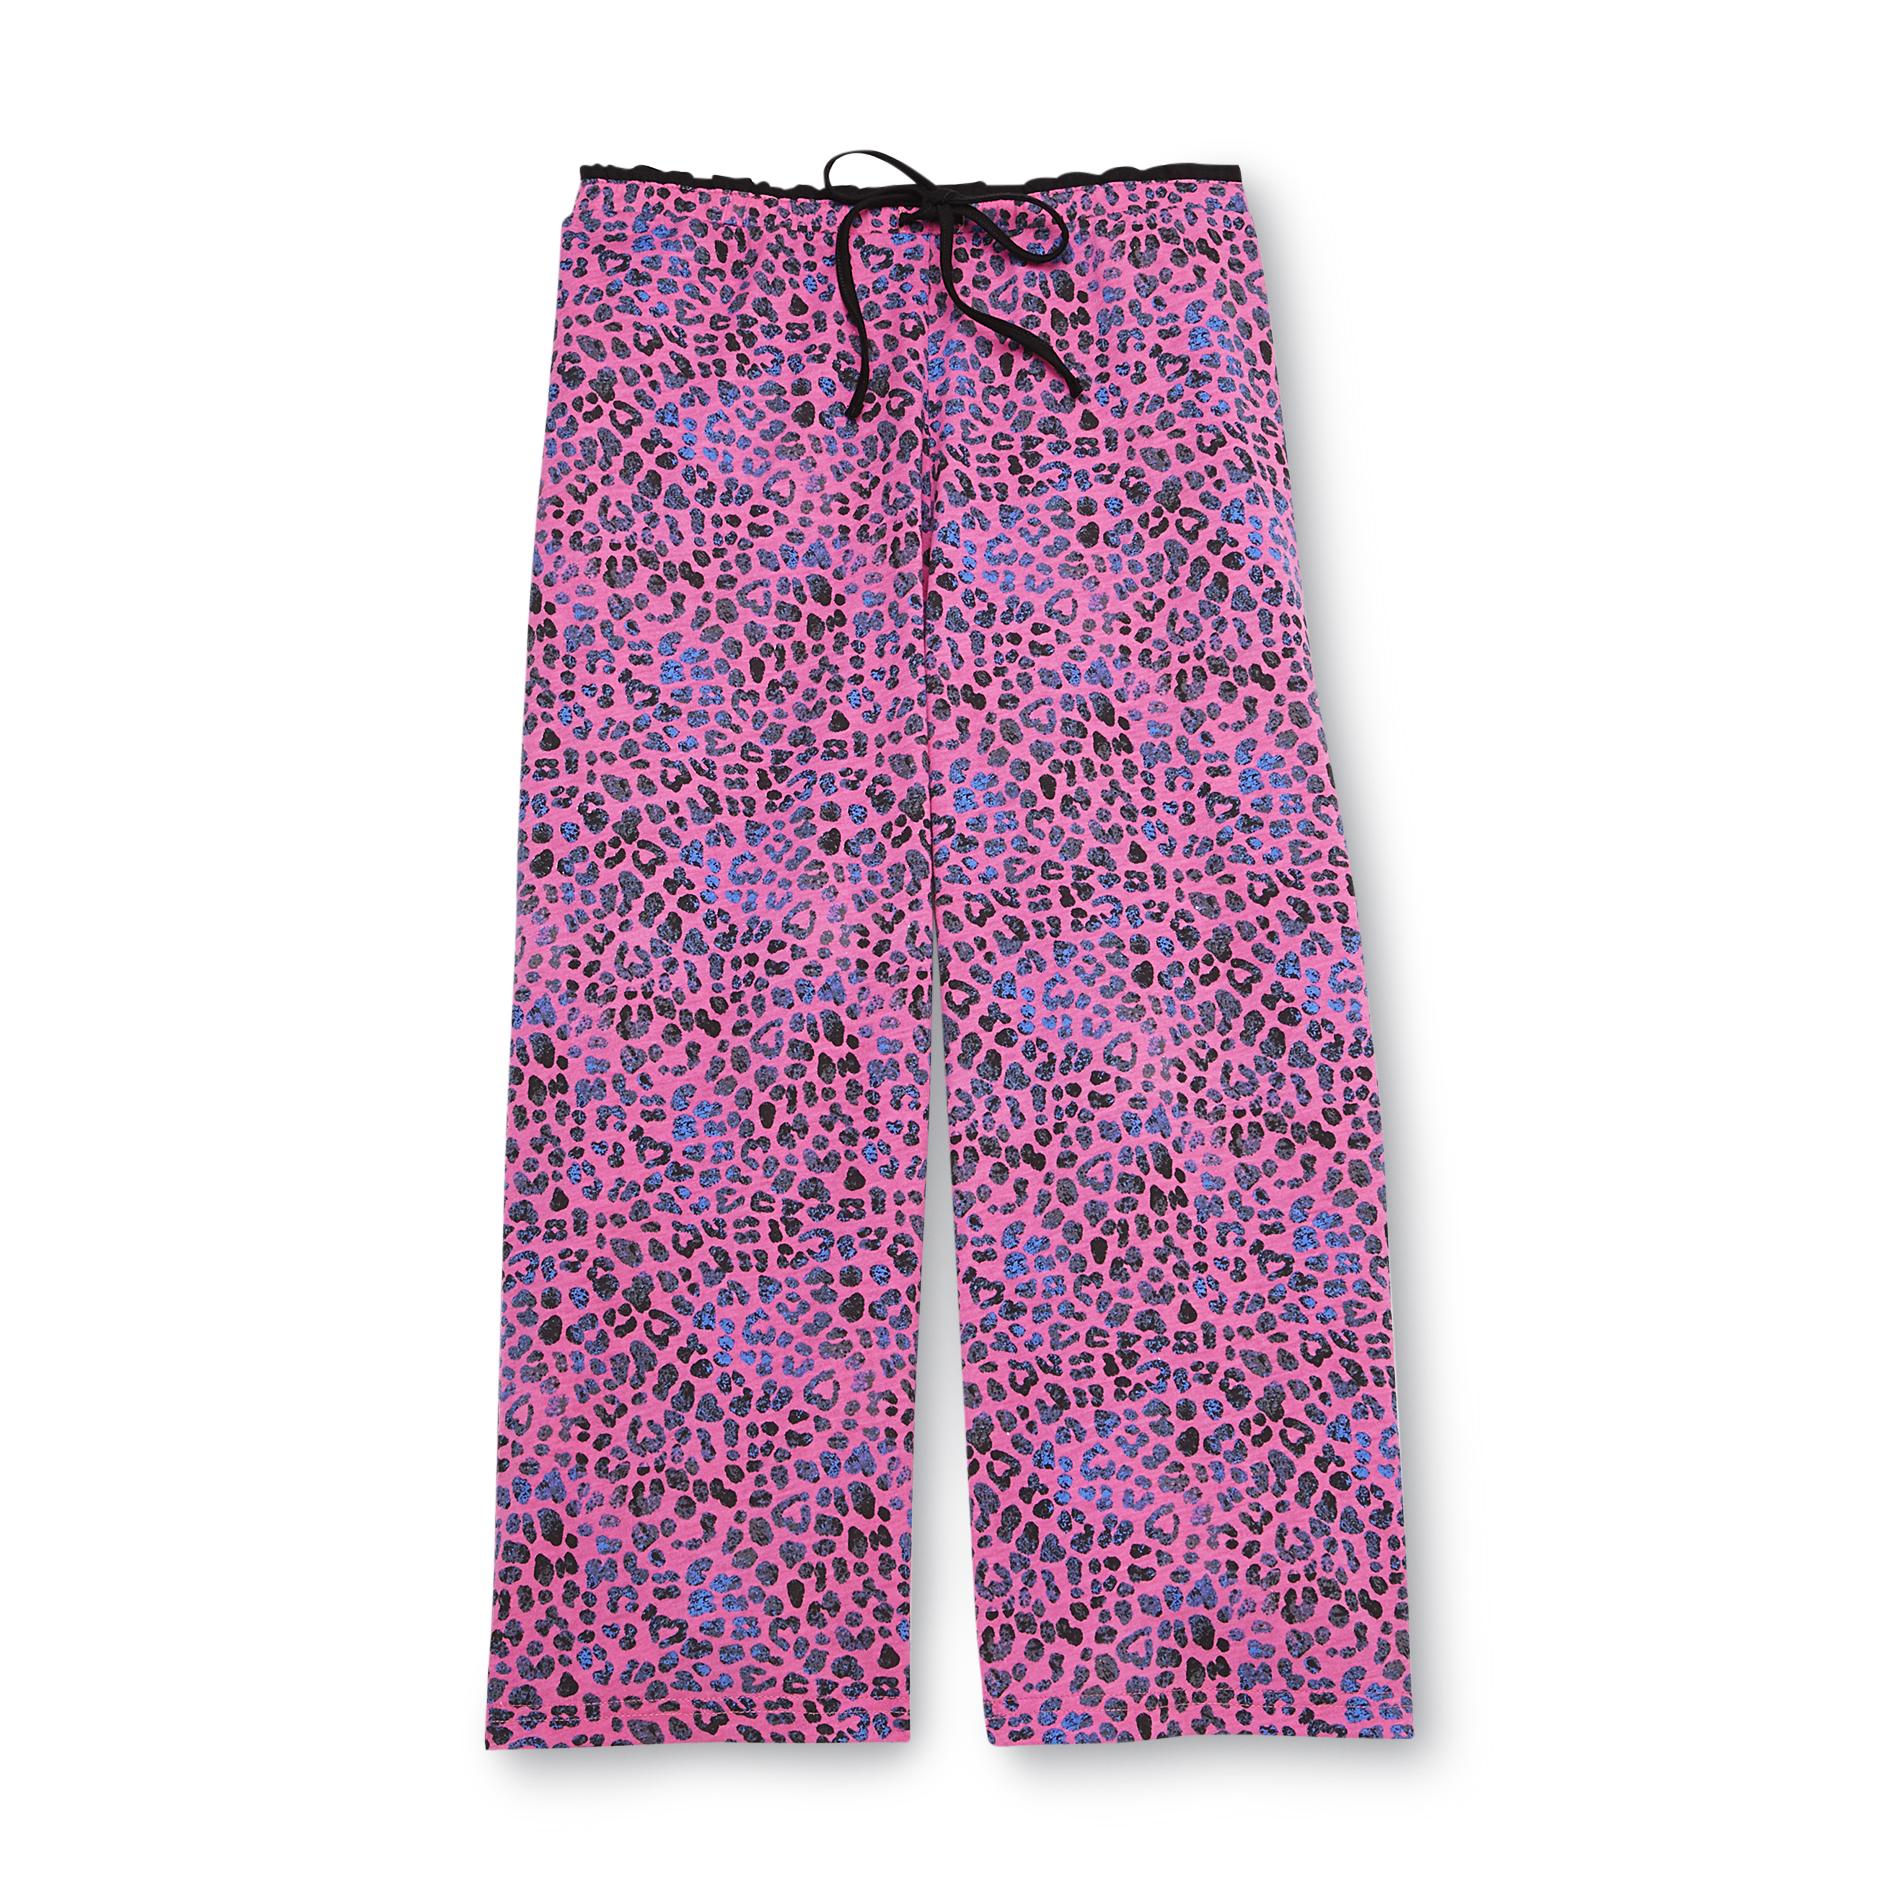 Joe Boxer Women's Knit Capri Lounge Pants - Leopard